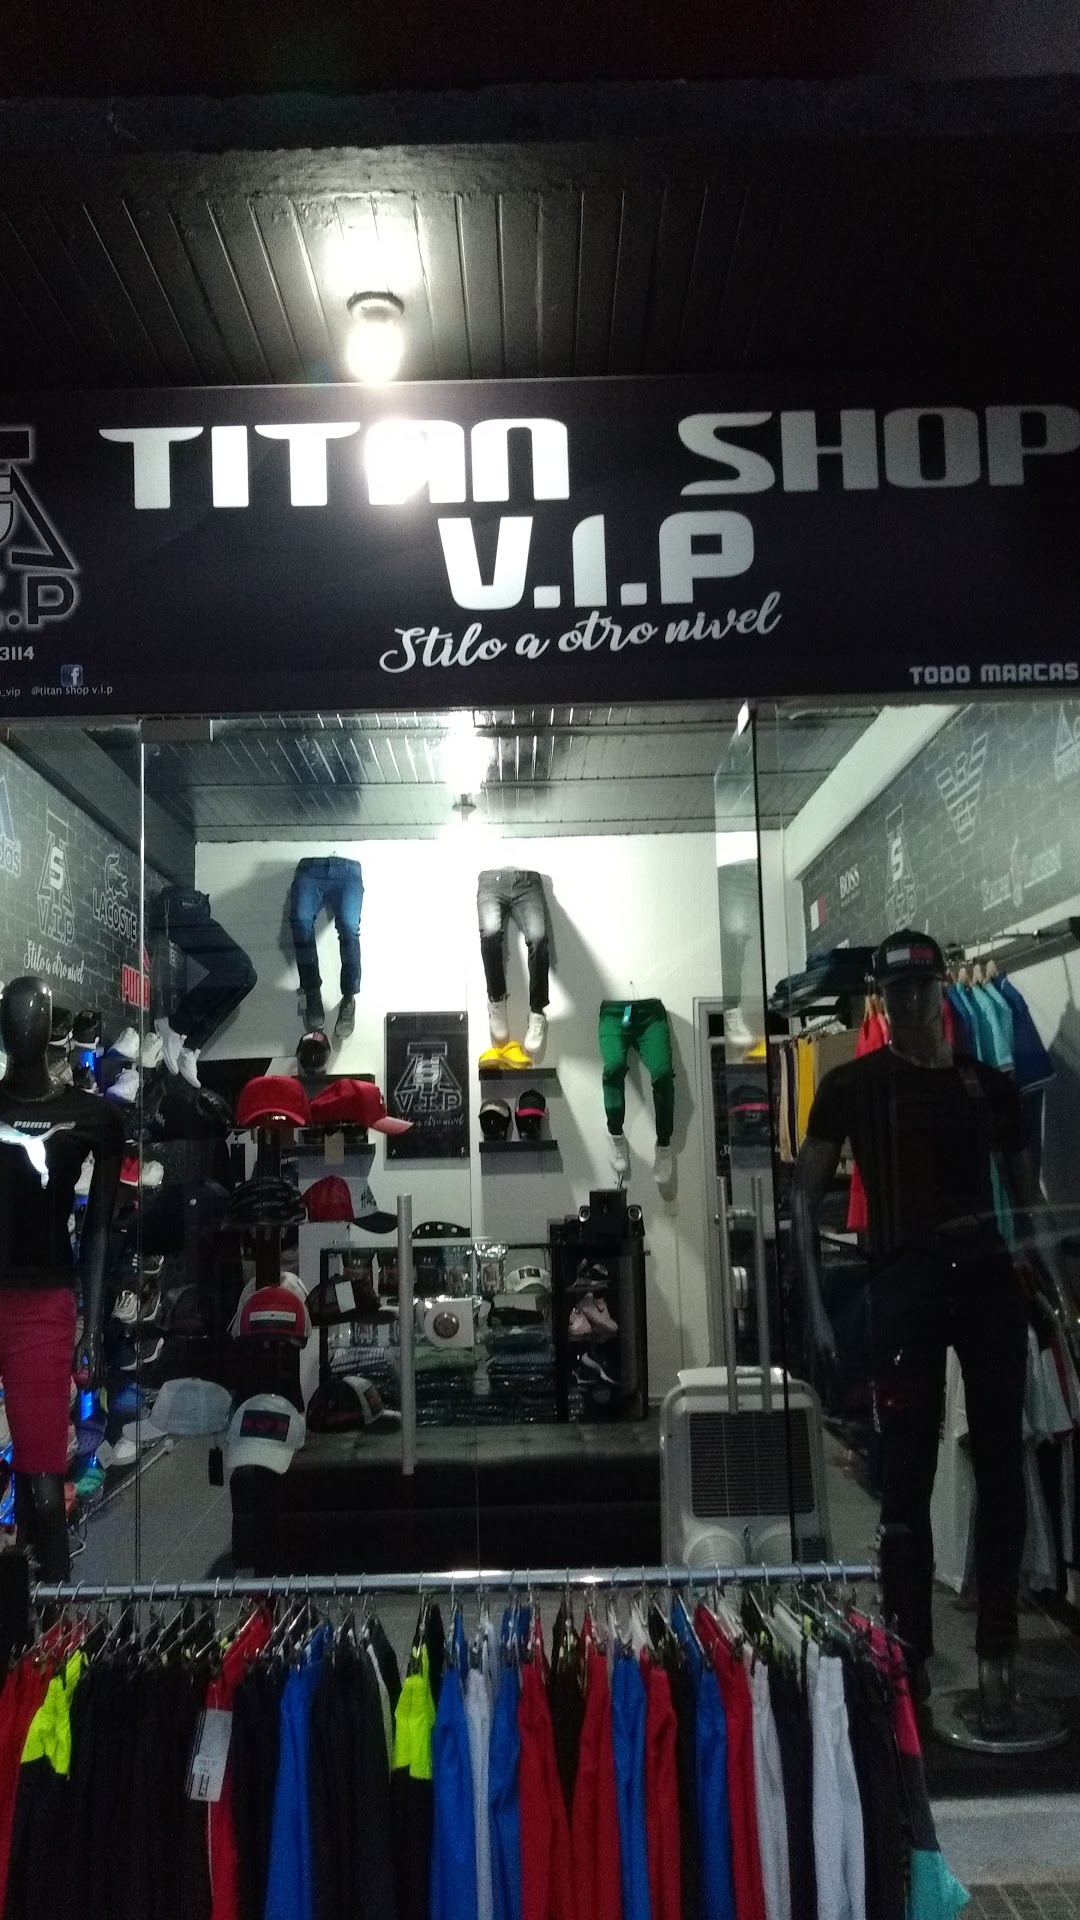 Titan Shop V.I.P